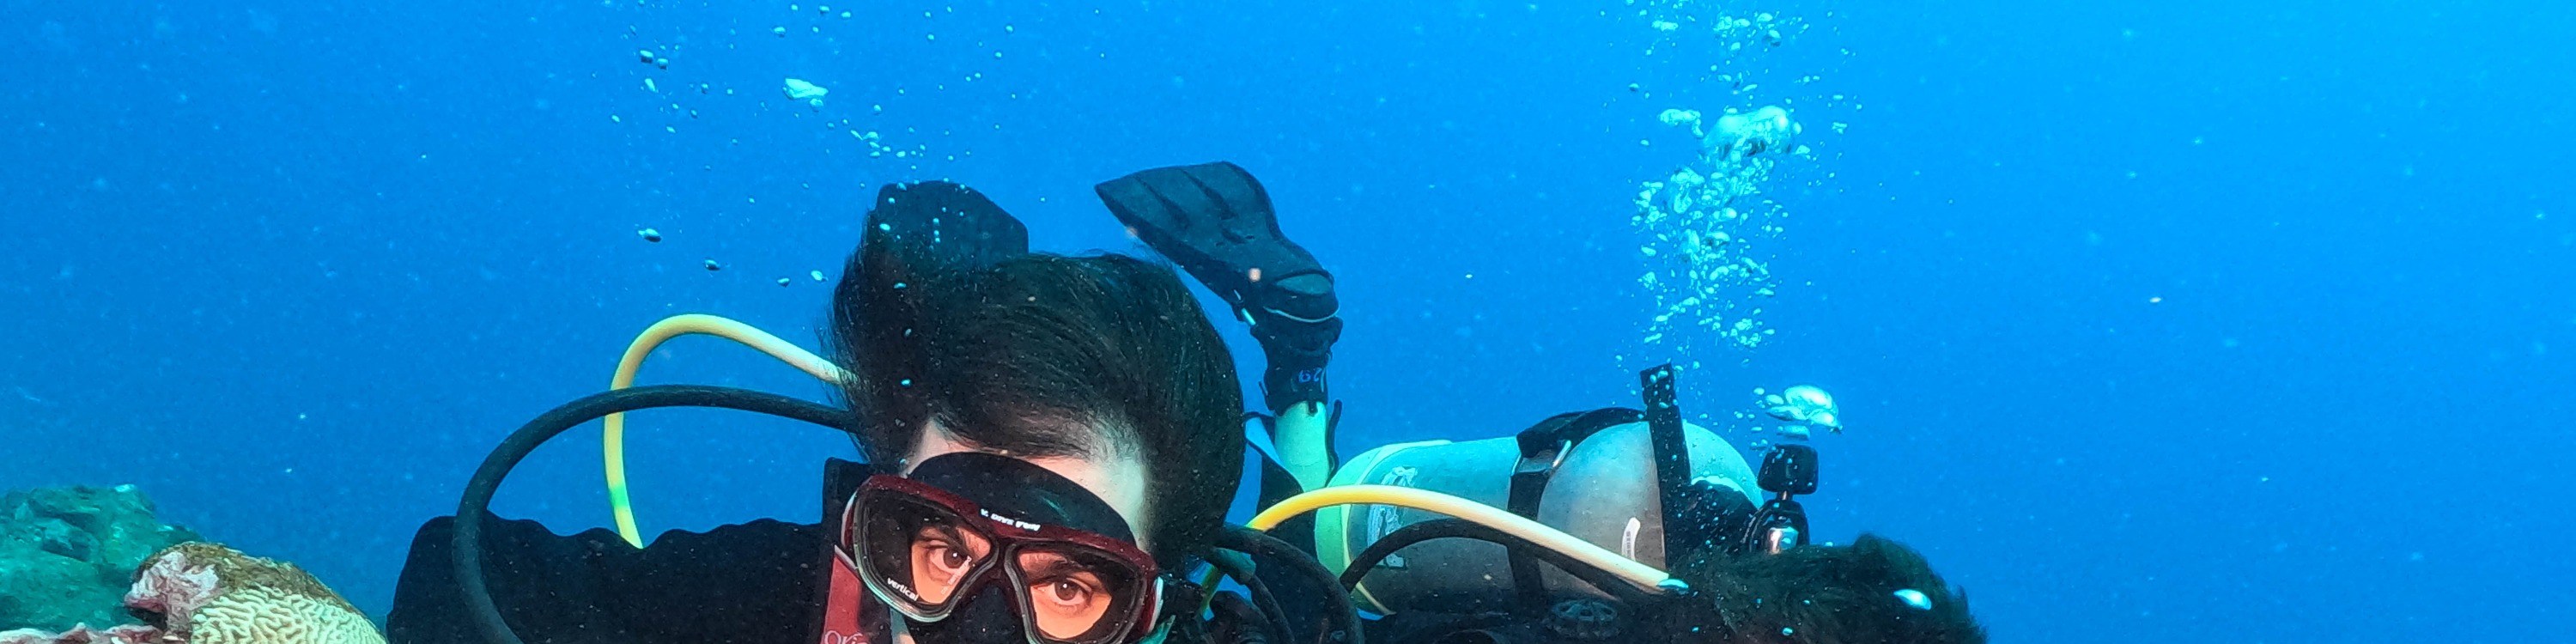 屏東: 小琉球居琉潛水-體驗潛水&限時贈送全新面鏡及修圖服務